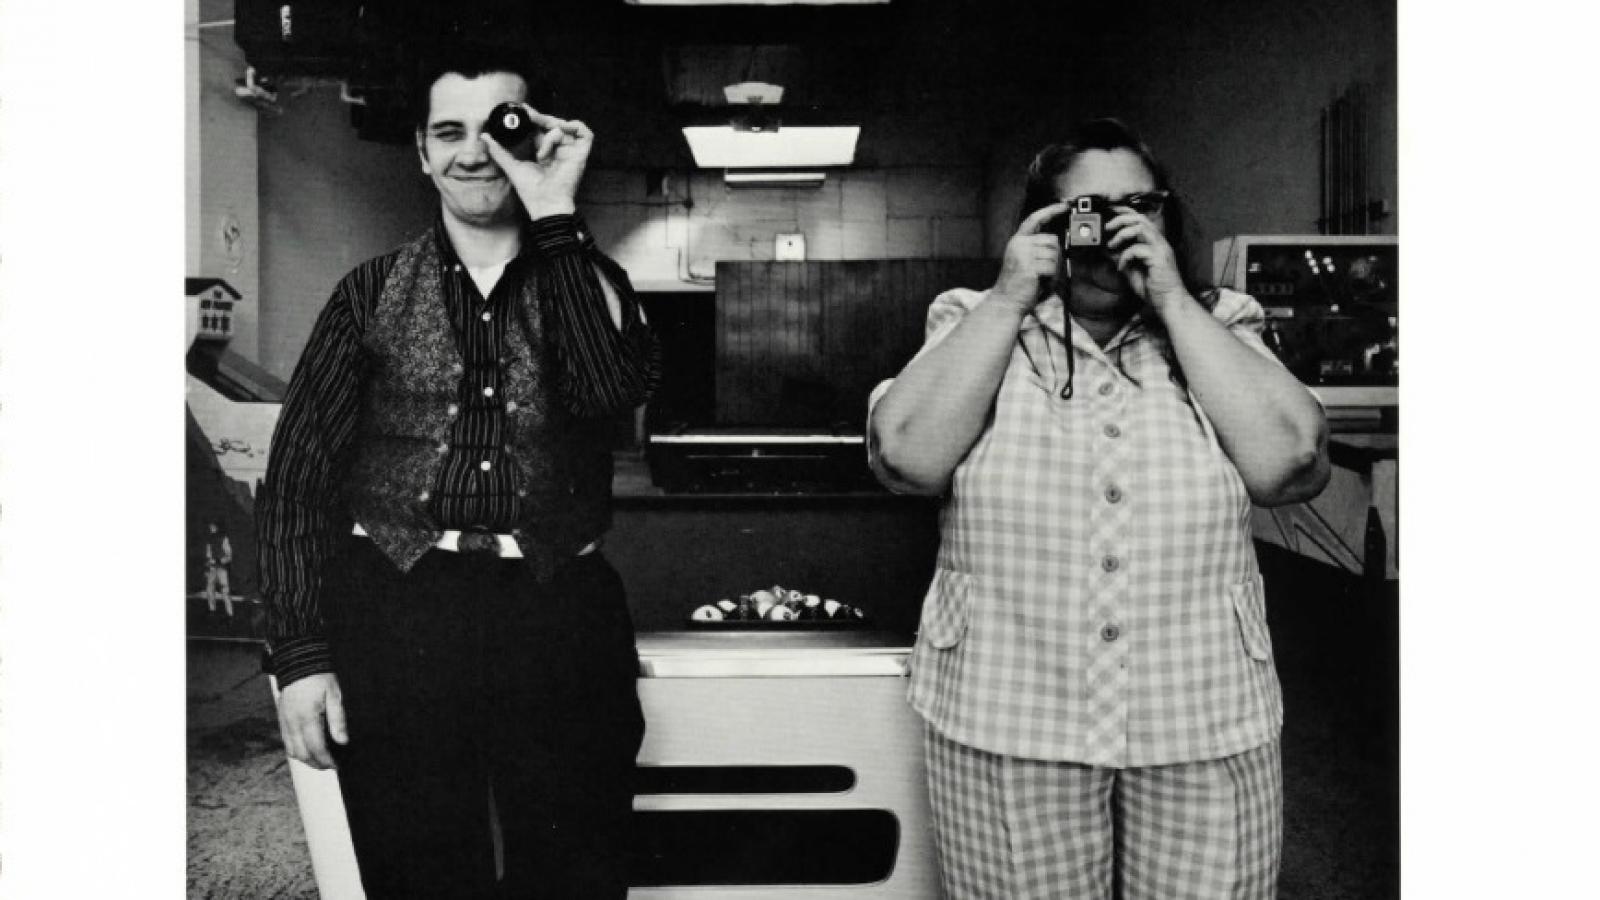 Mr. Spoons (Joe Jones) and his mother, Mildred Jones in Cincinnati, Ohio.